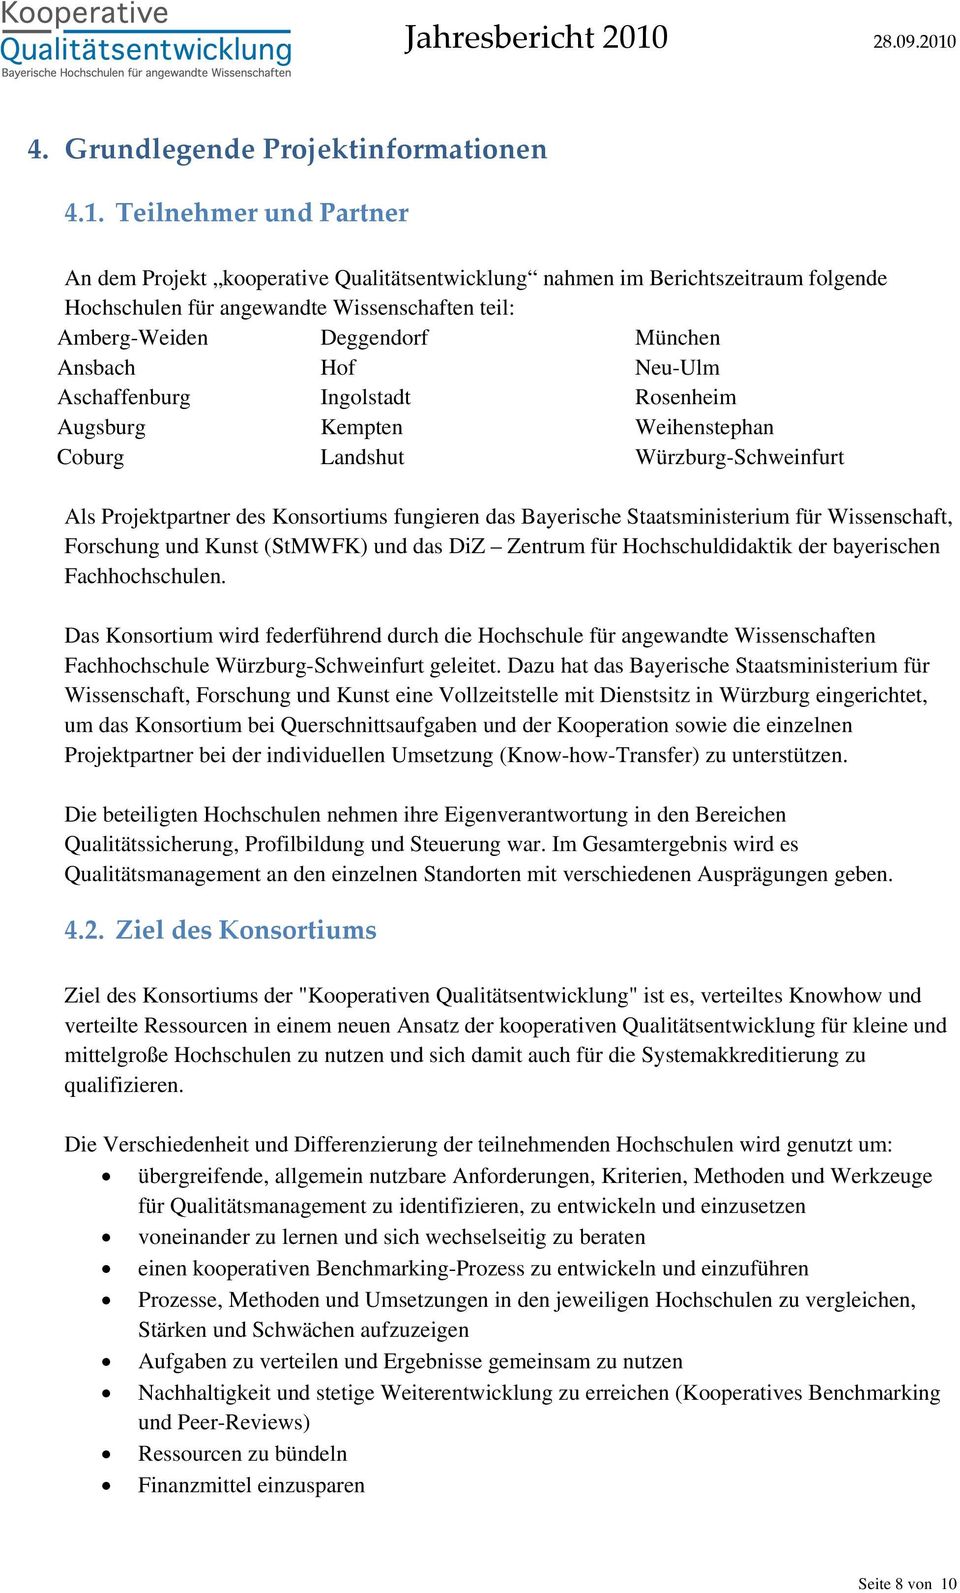 Neu-Ulm Aschaffenburg Ingolstadt Rosenheim Augsburg Kempten Weihenstephan Coburg Landshut Würzburg-Schweinfurt Als Projektpartner des Konsortiums fungieren das Bayerische Staatsministerium für